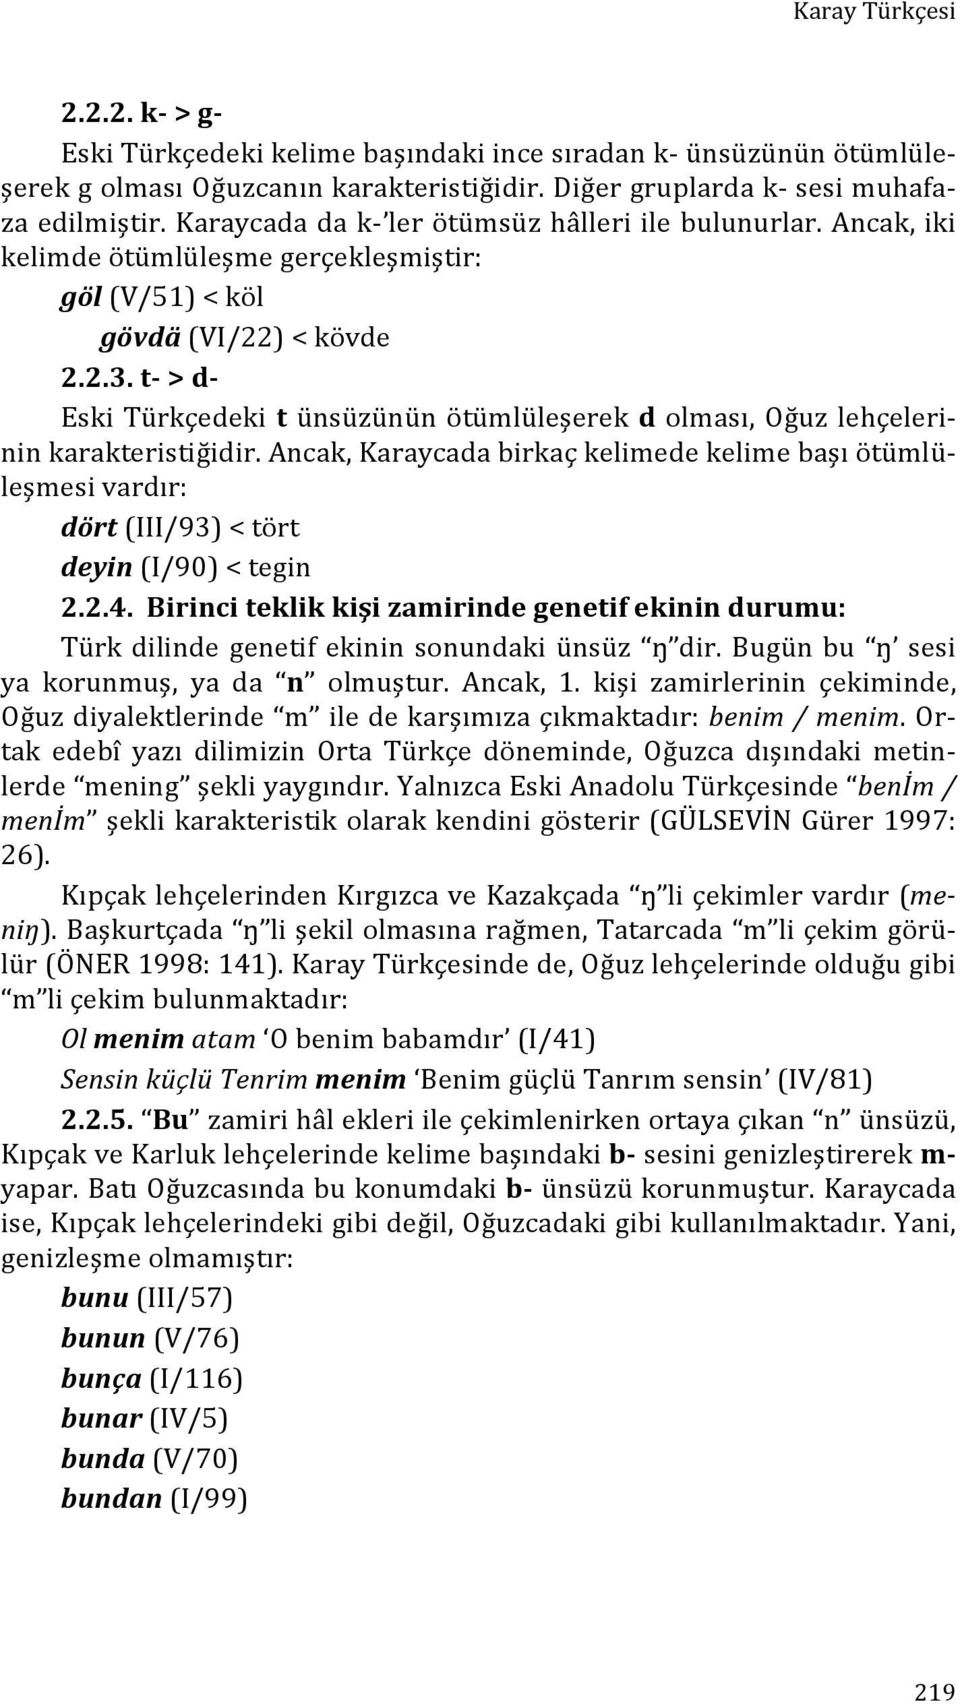 t- > d- Eski Türkçedeki t ünsüzünün ötümlüleşerek d olması, Oğuz lehçeleri- nin karakteristiğidir.